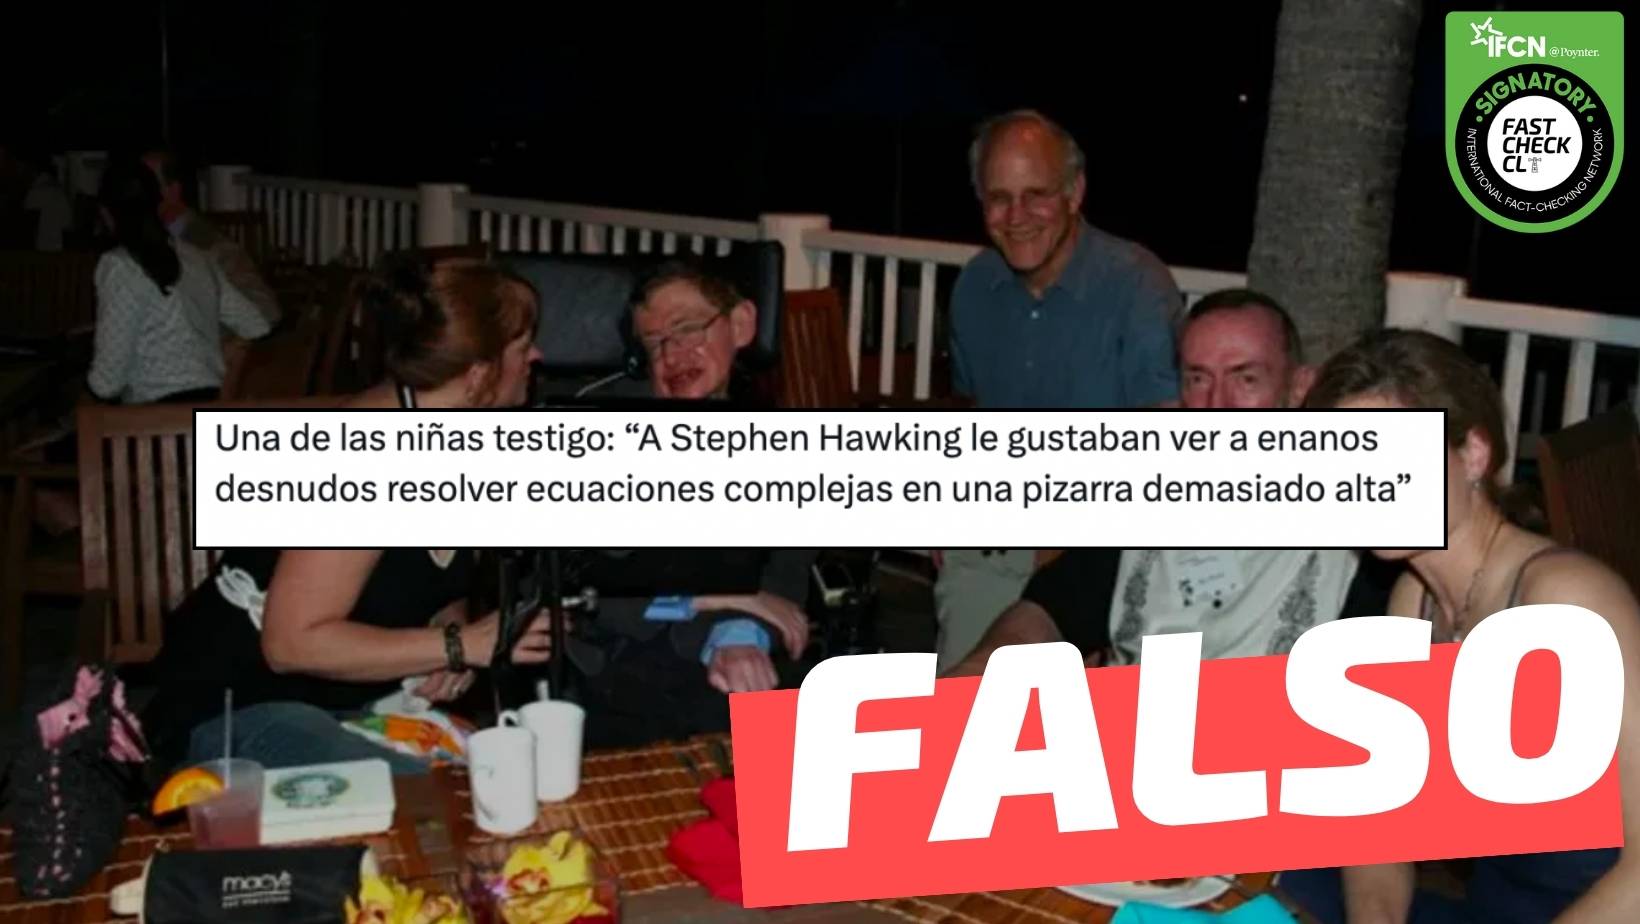 You are currently viewing “A Stephen Hawking le gustaba ver a enanos desnudos resolver ecuaciones complejas en una pizarra”: #Falso